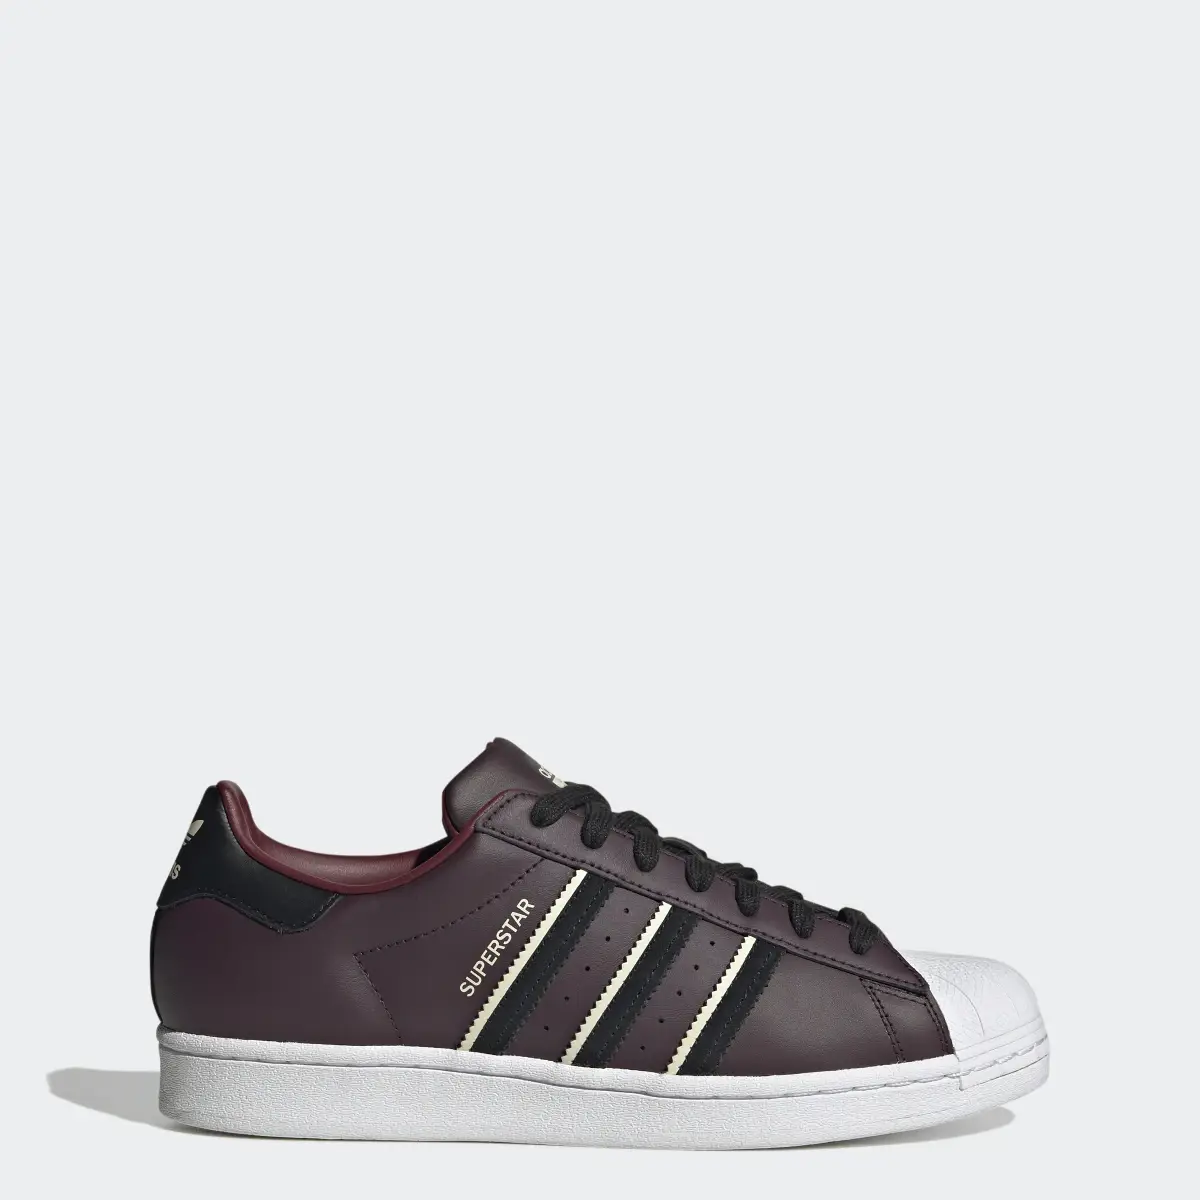 Adidas Superstar Ayakkabı. 1